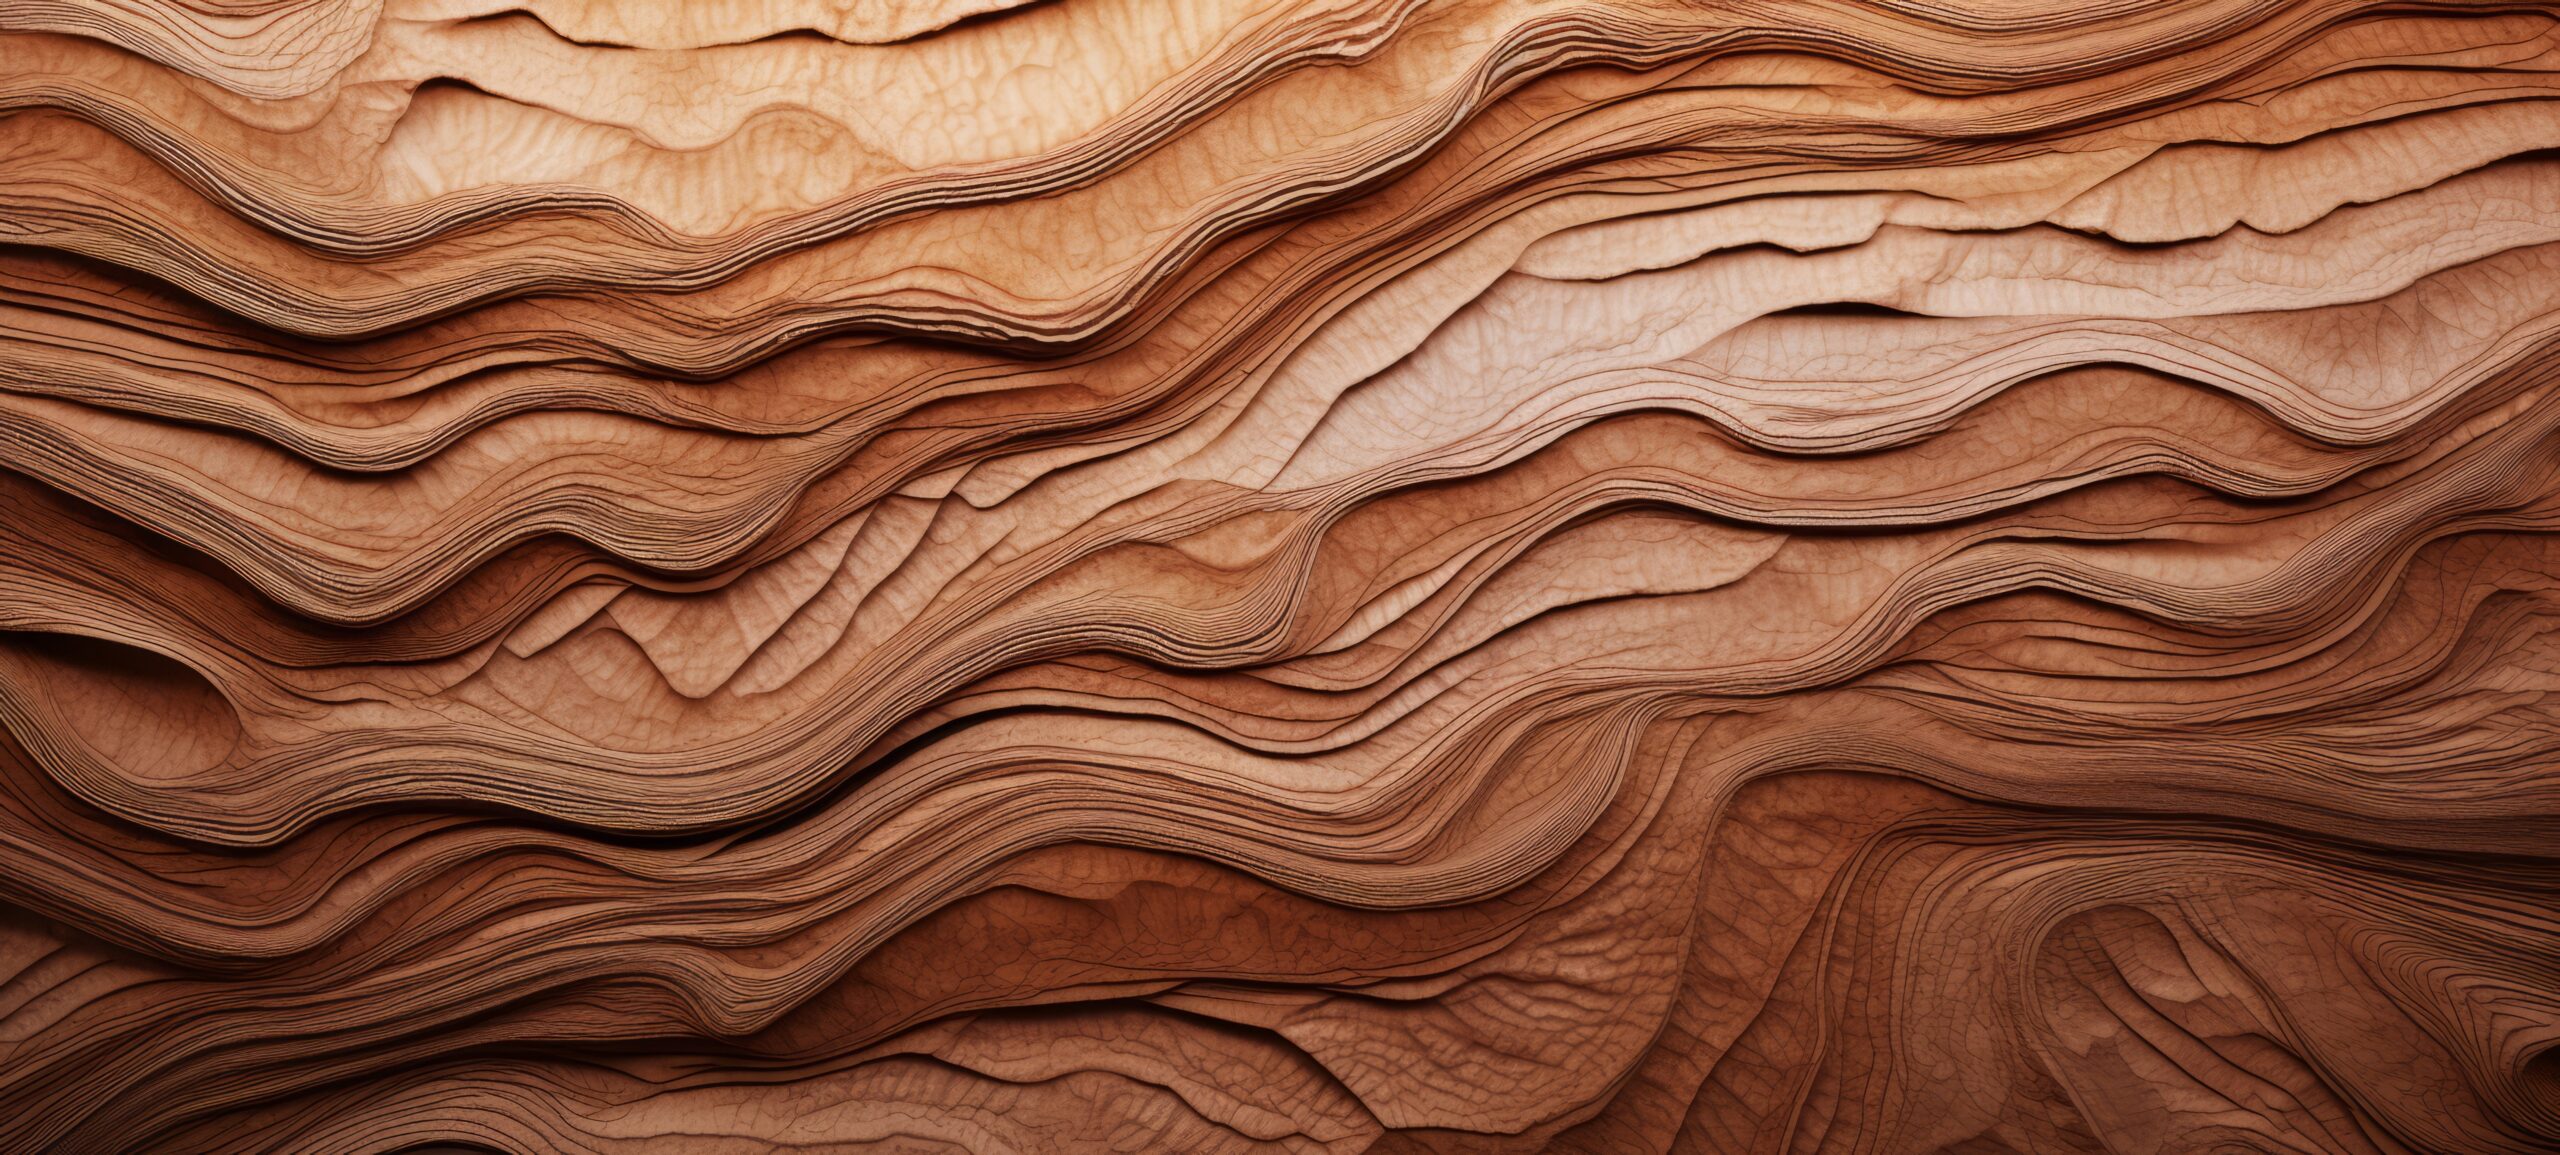 Le bois dans l’aménagement intérieur, le matériau intemporel et tendance !